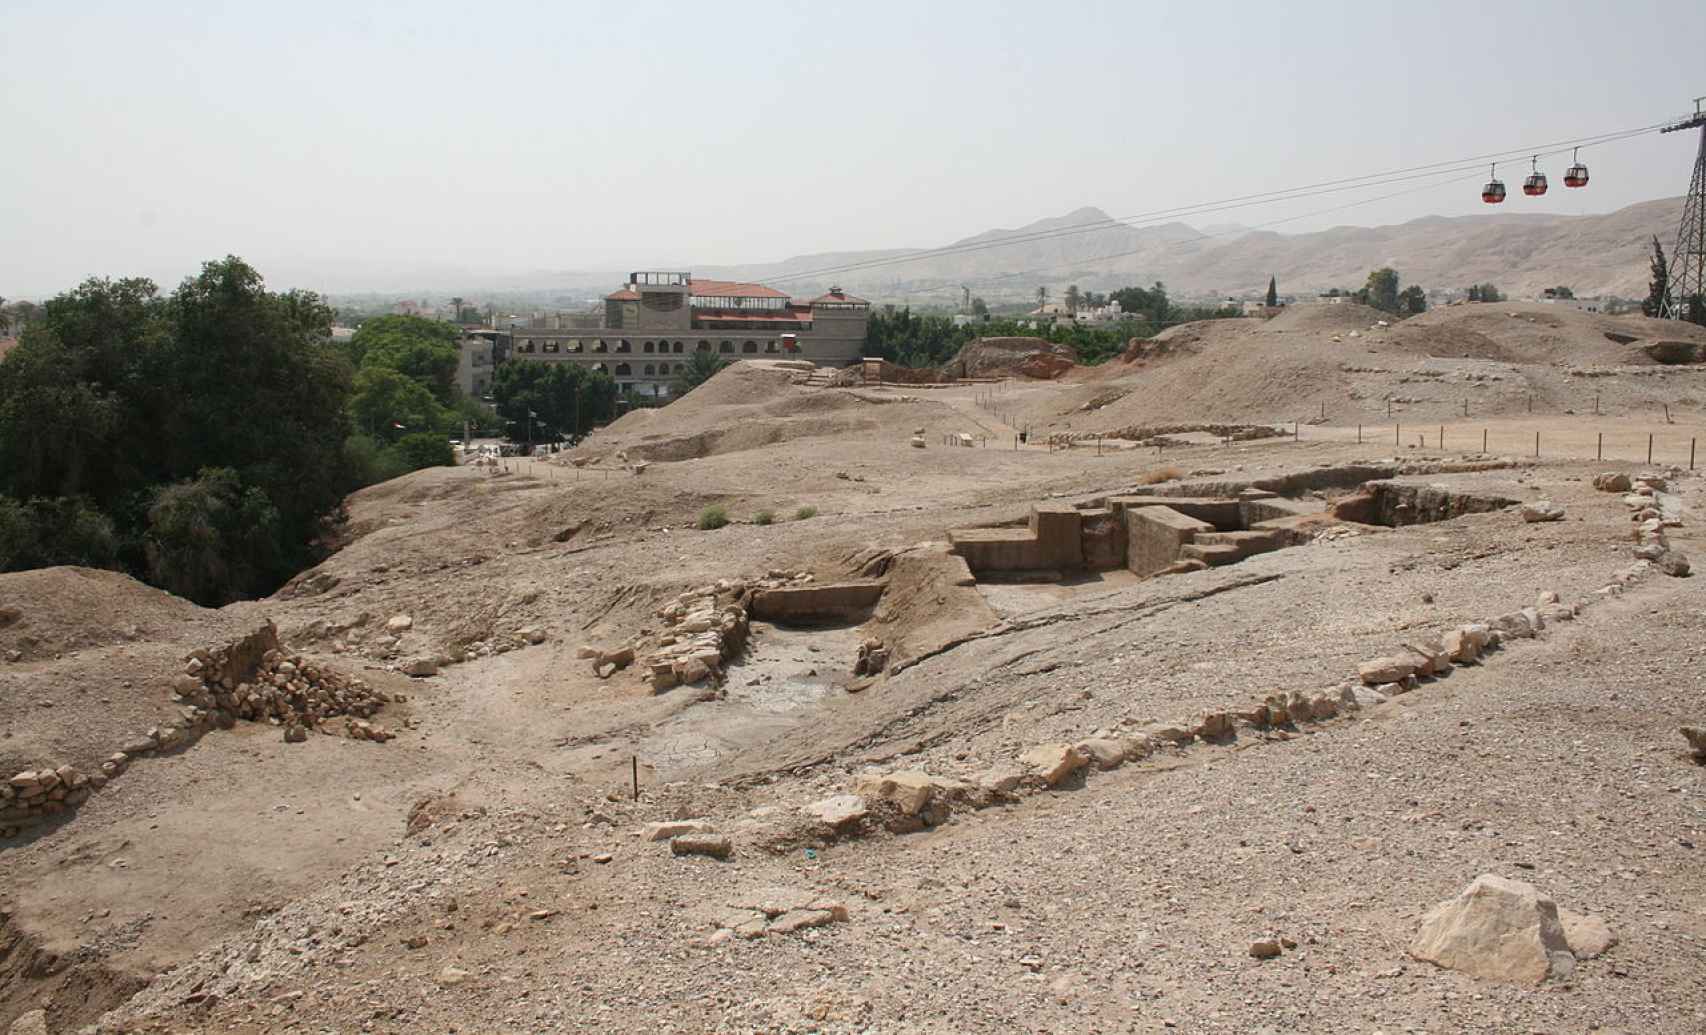 Yacimiento arqueológico de Tell es-Sultan.